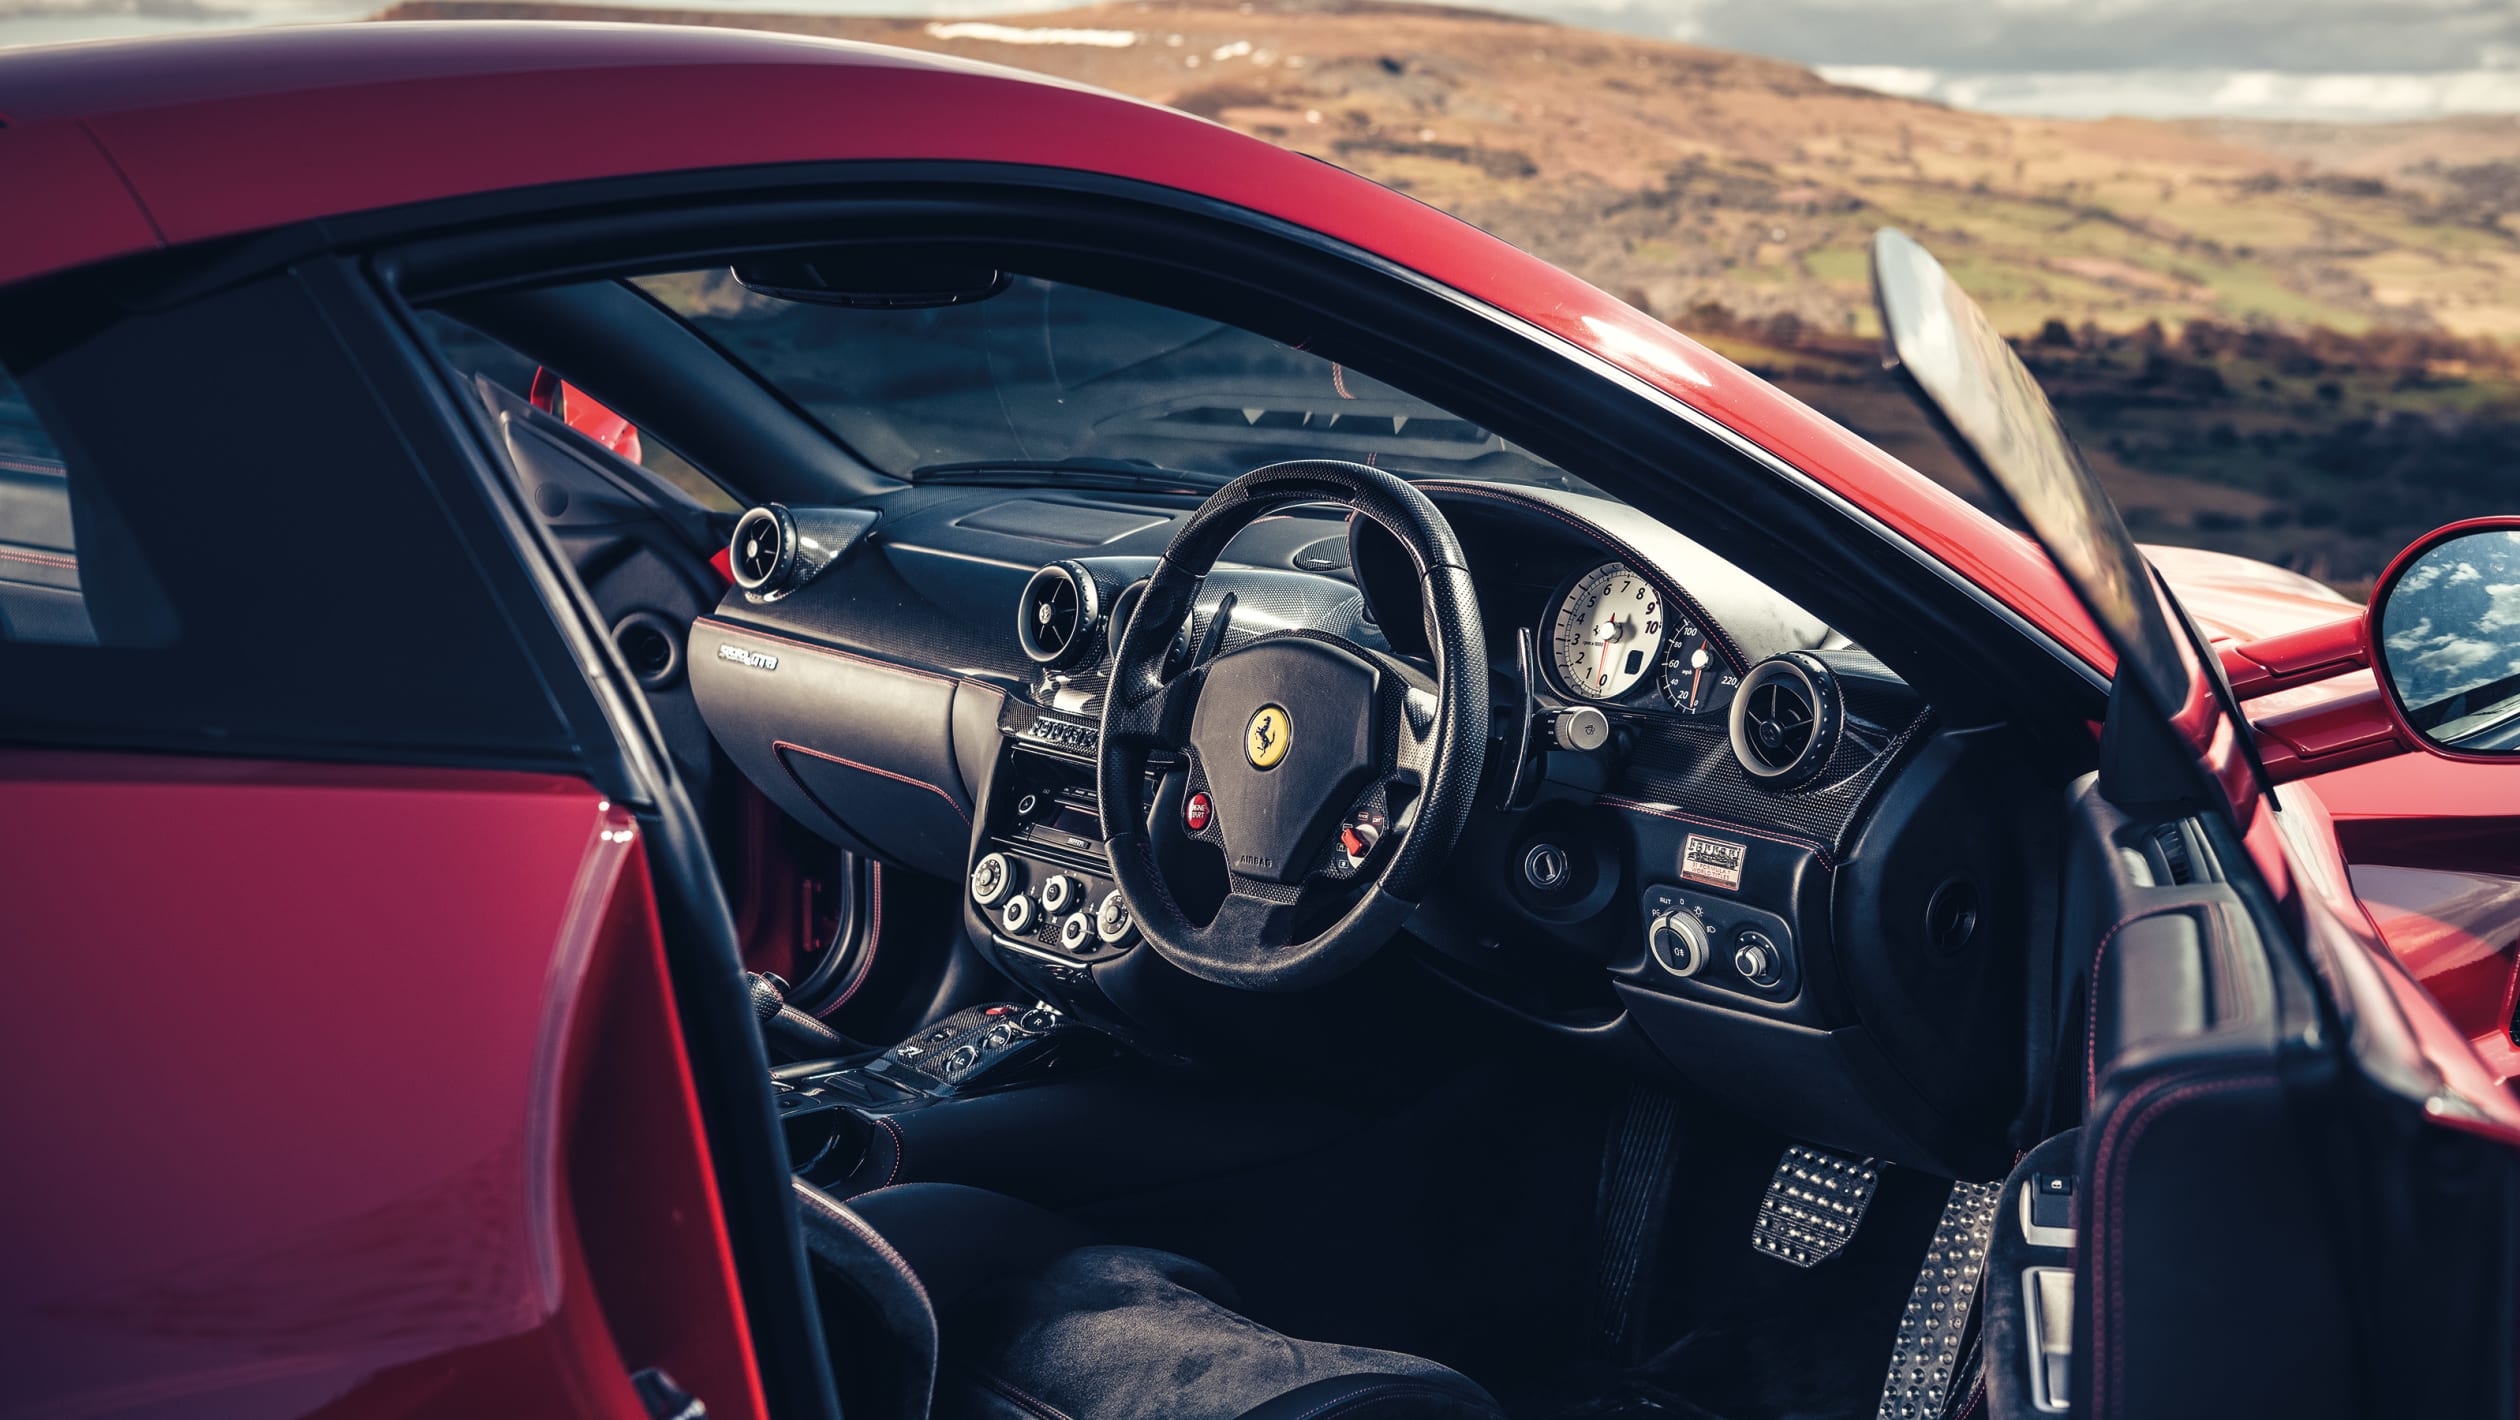 Ferrari GTs feature 18